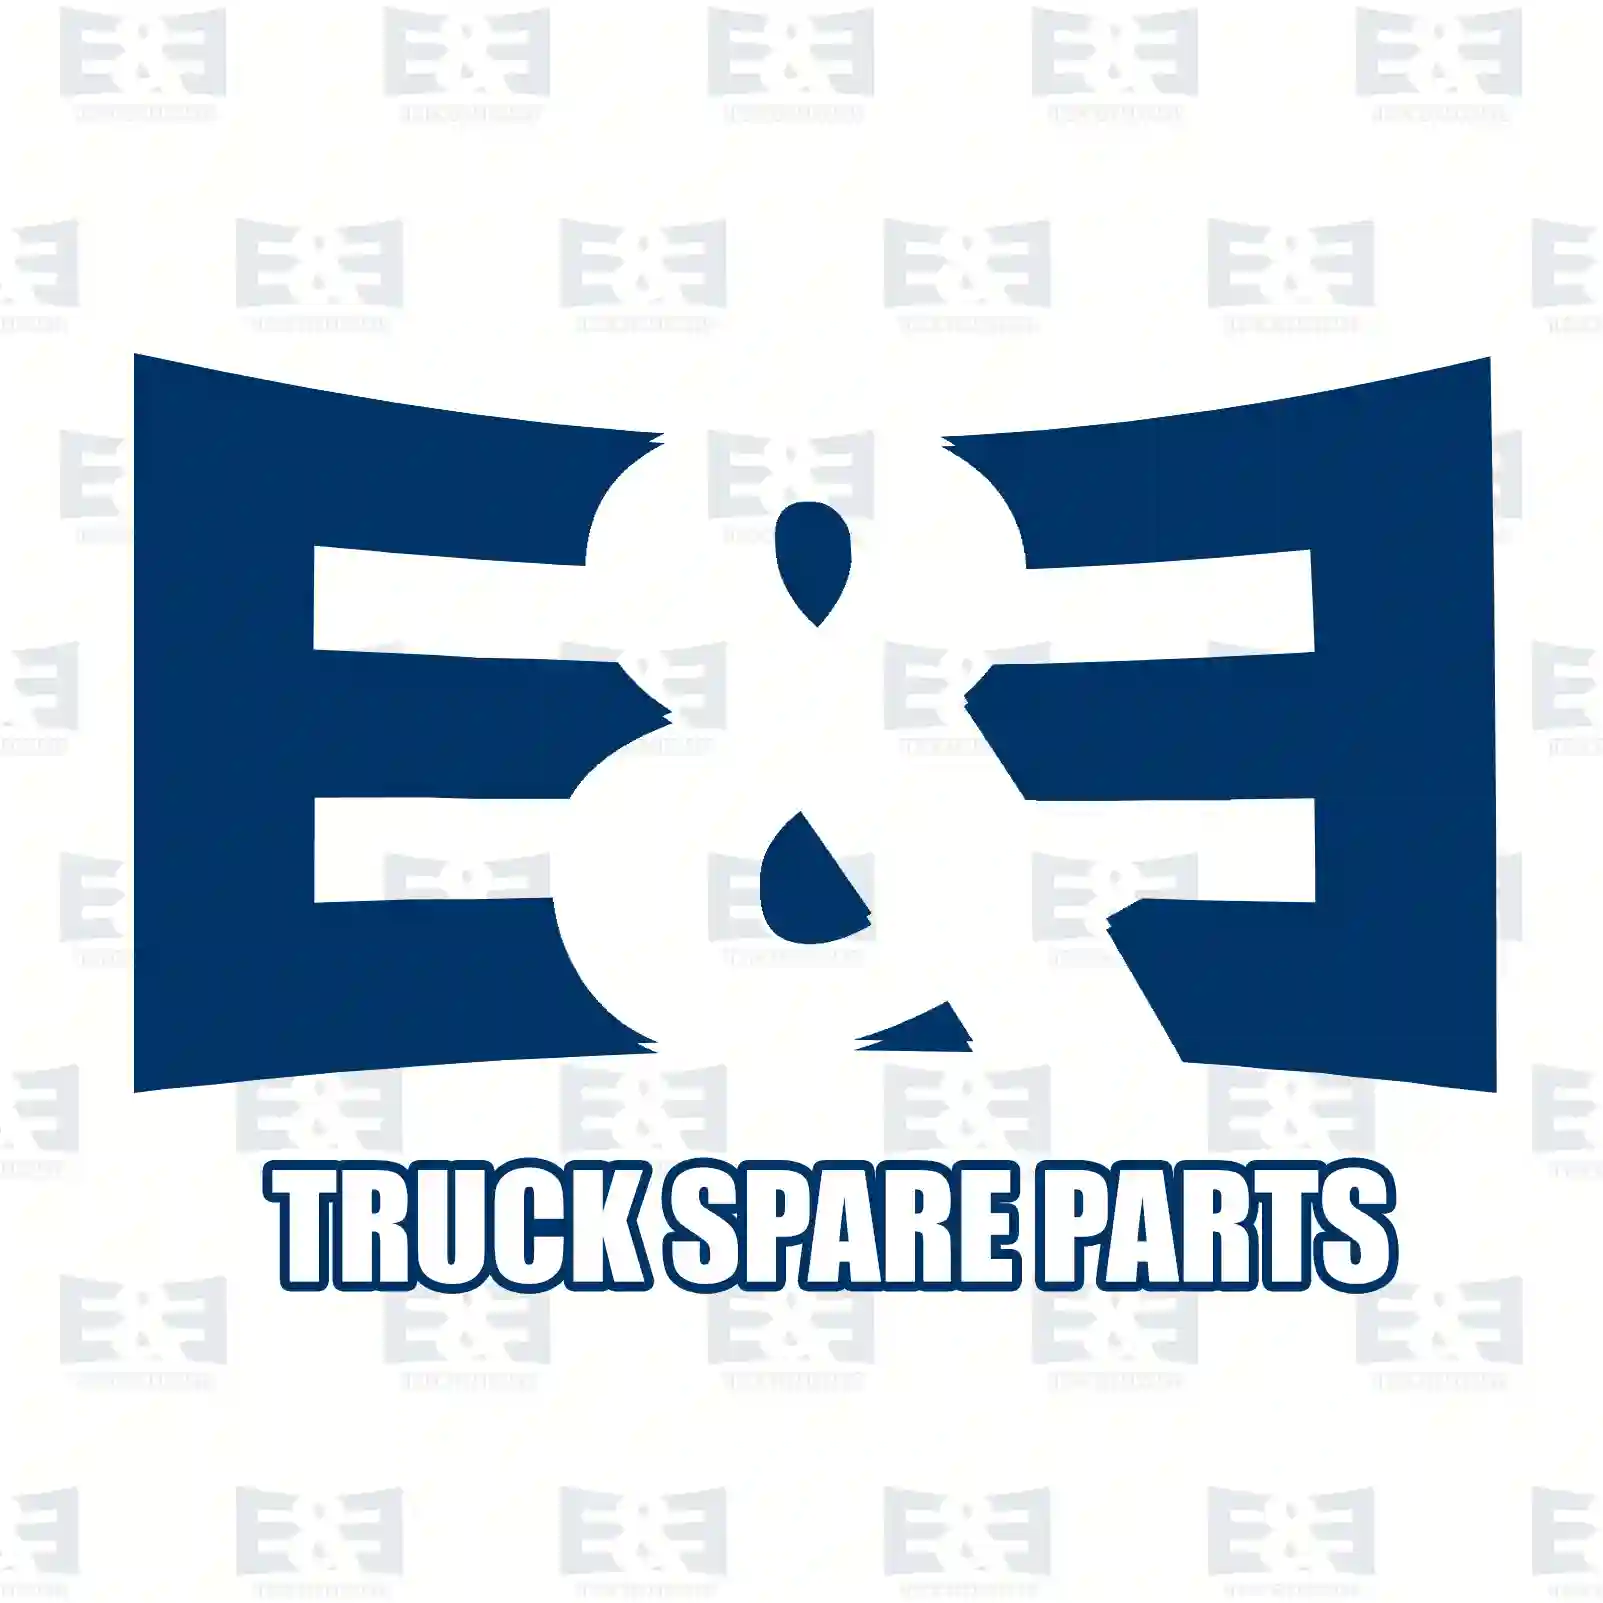 Brake disc, 2E2296446, 4164210412, 4354210412, , , , , ||  2E2296446 E&E Truck Spare Parts | Truck Spare Parts, Auotomotive Spare Parts Brake disc, 2E2296446, 4164210412, 4354210412, , , , , ||  2E2296446 E&E Truck Spare Parts | Truck Spare Parts, Auotomotive Spare Parts